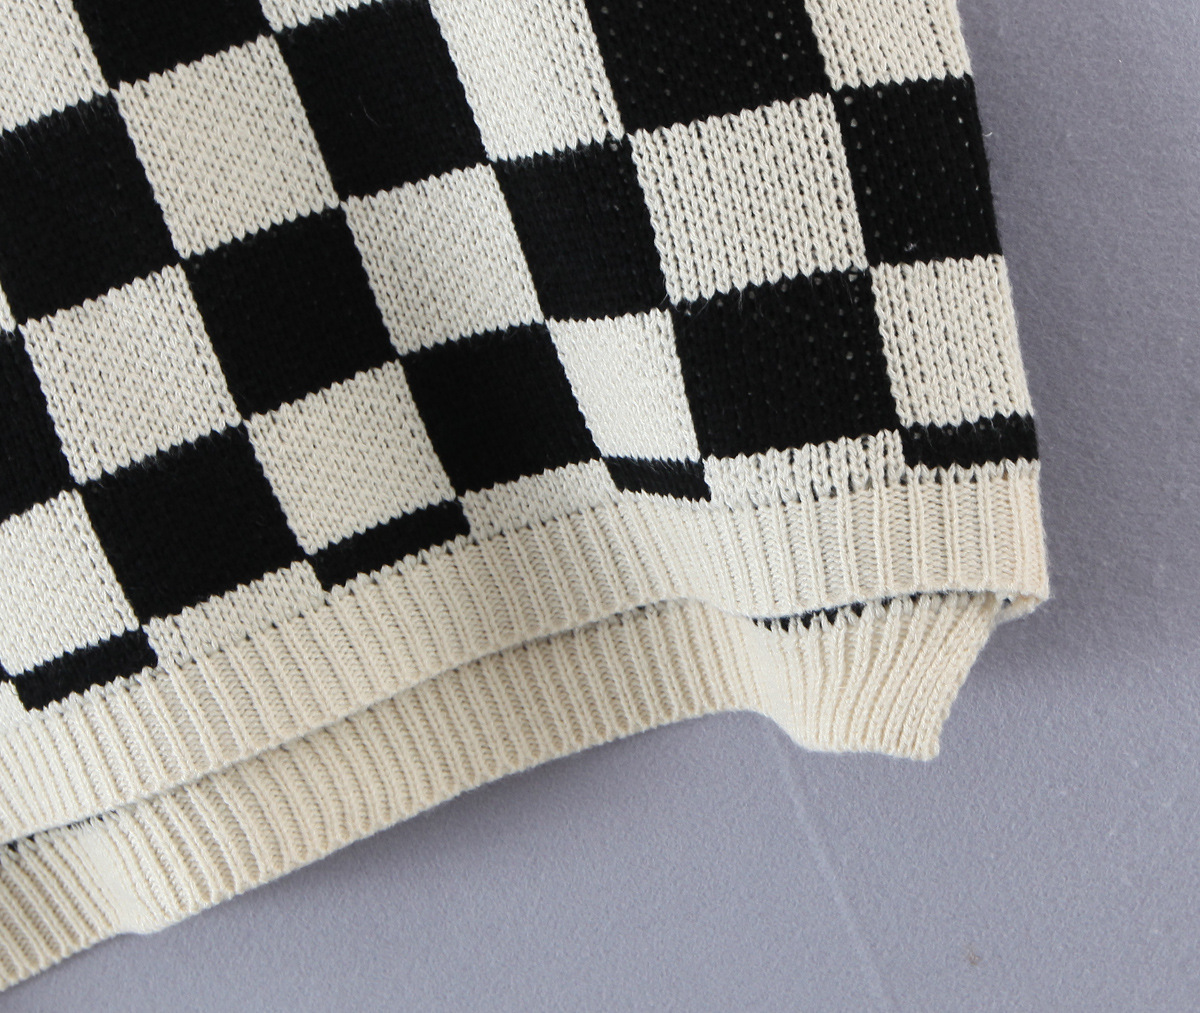 Black & White Checkerboard Knitted Vest NSBRF101669